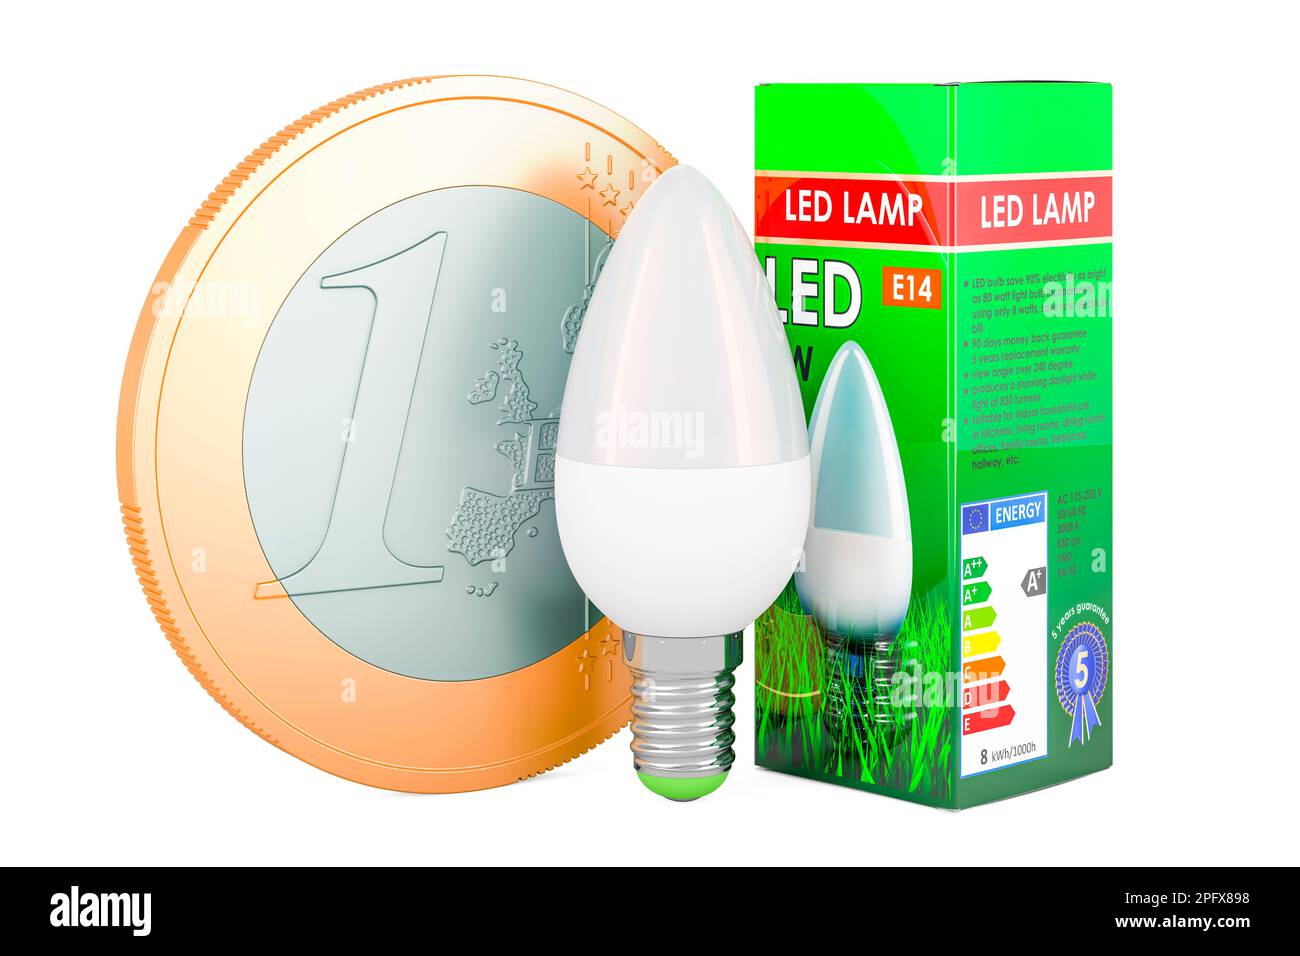 Energiesparende LED-Lampe mit Euro-Münze. Energiesparkonzept. 3D-Rendering  auf weißem Hintergrund isoliert Stockfotografie - Alamy